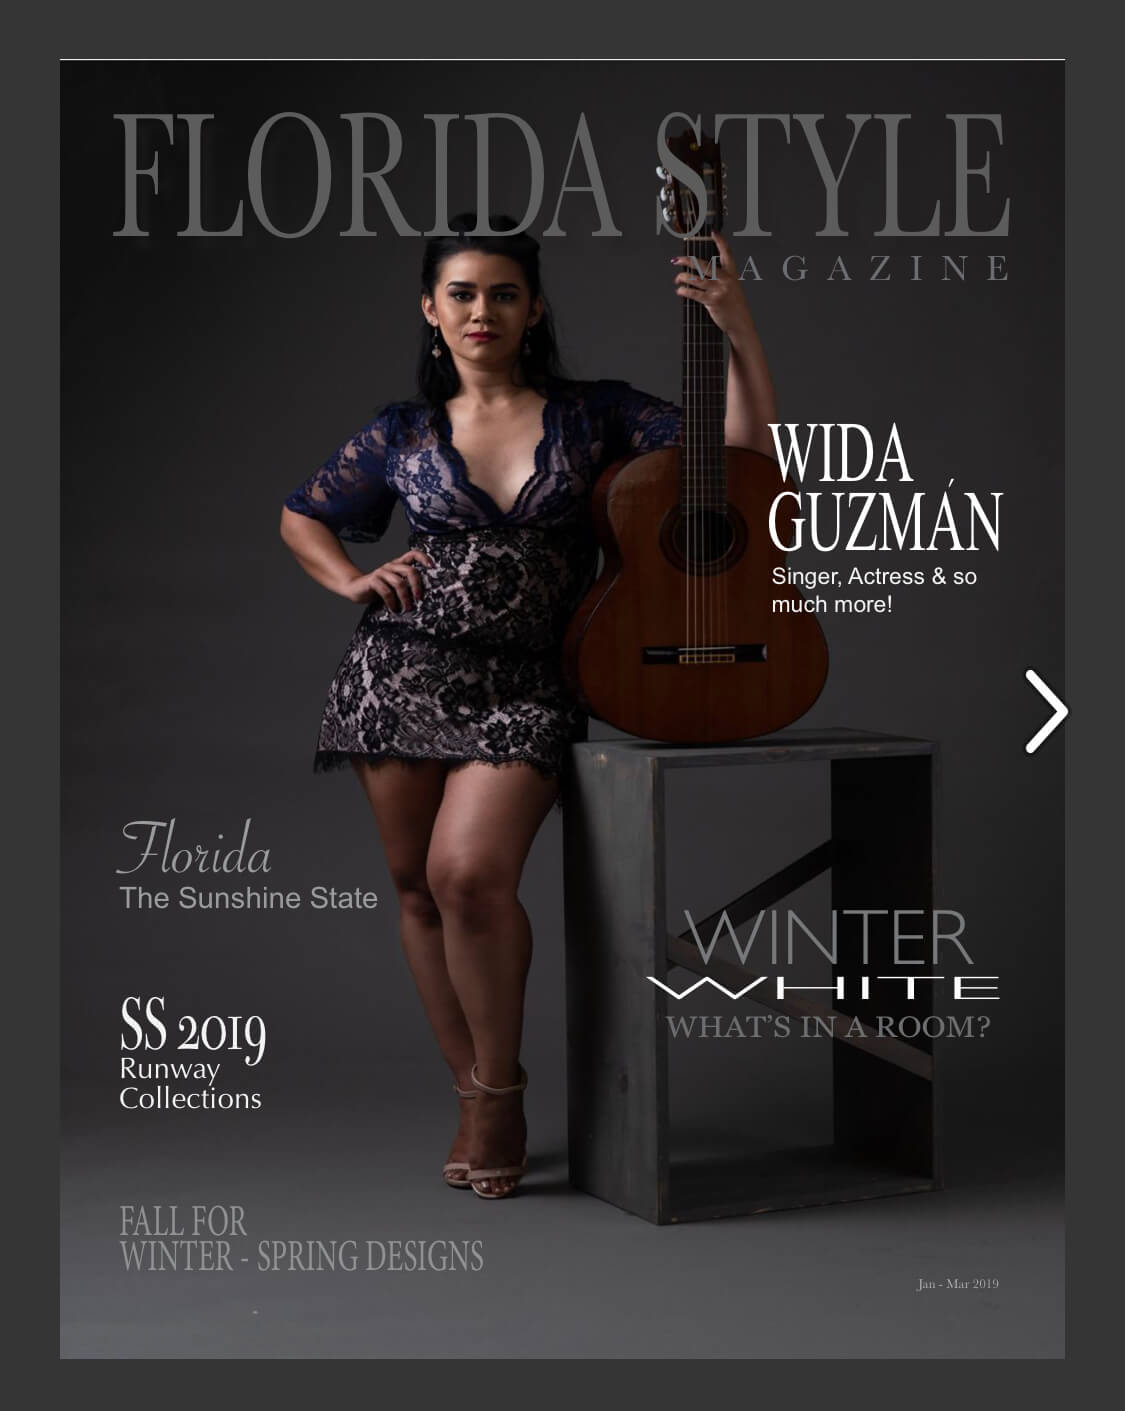 Florida style magazine 2